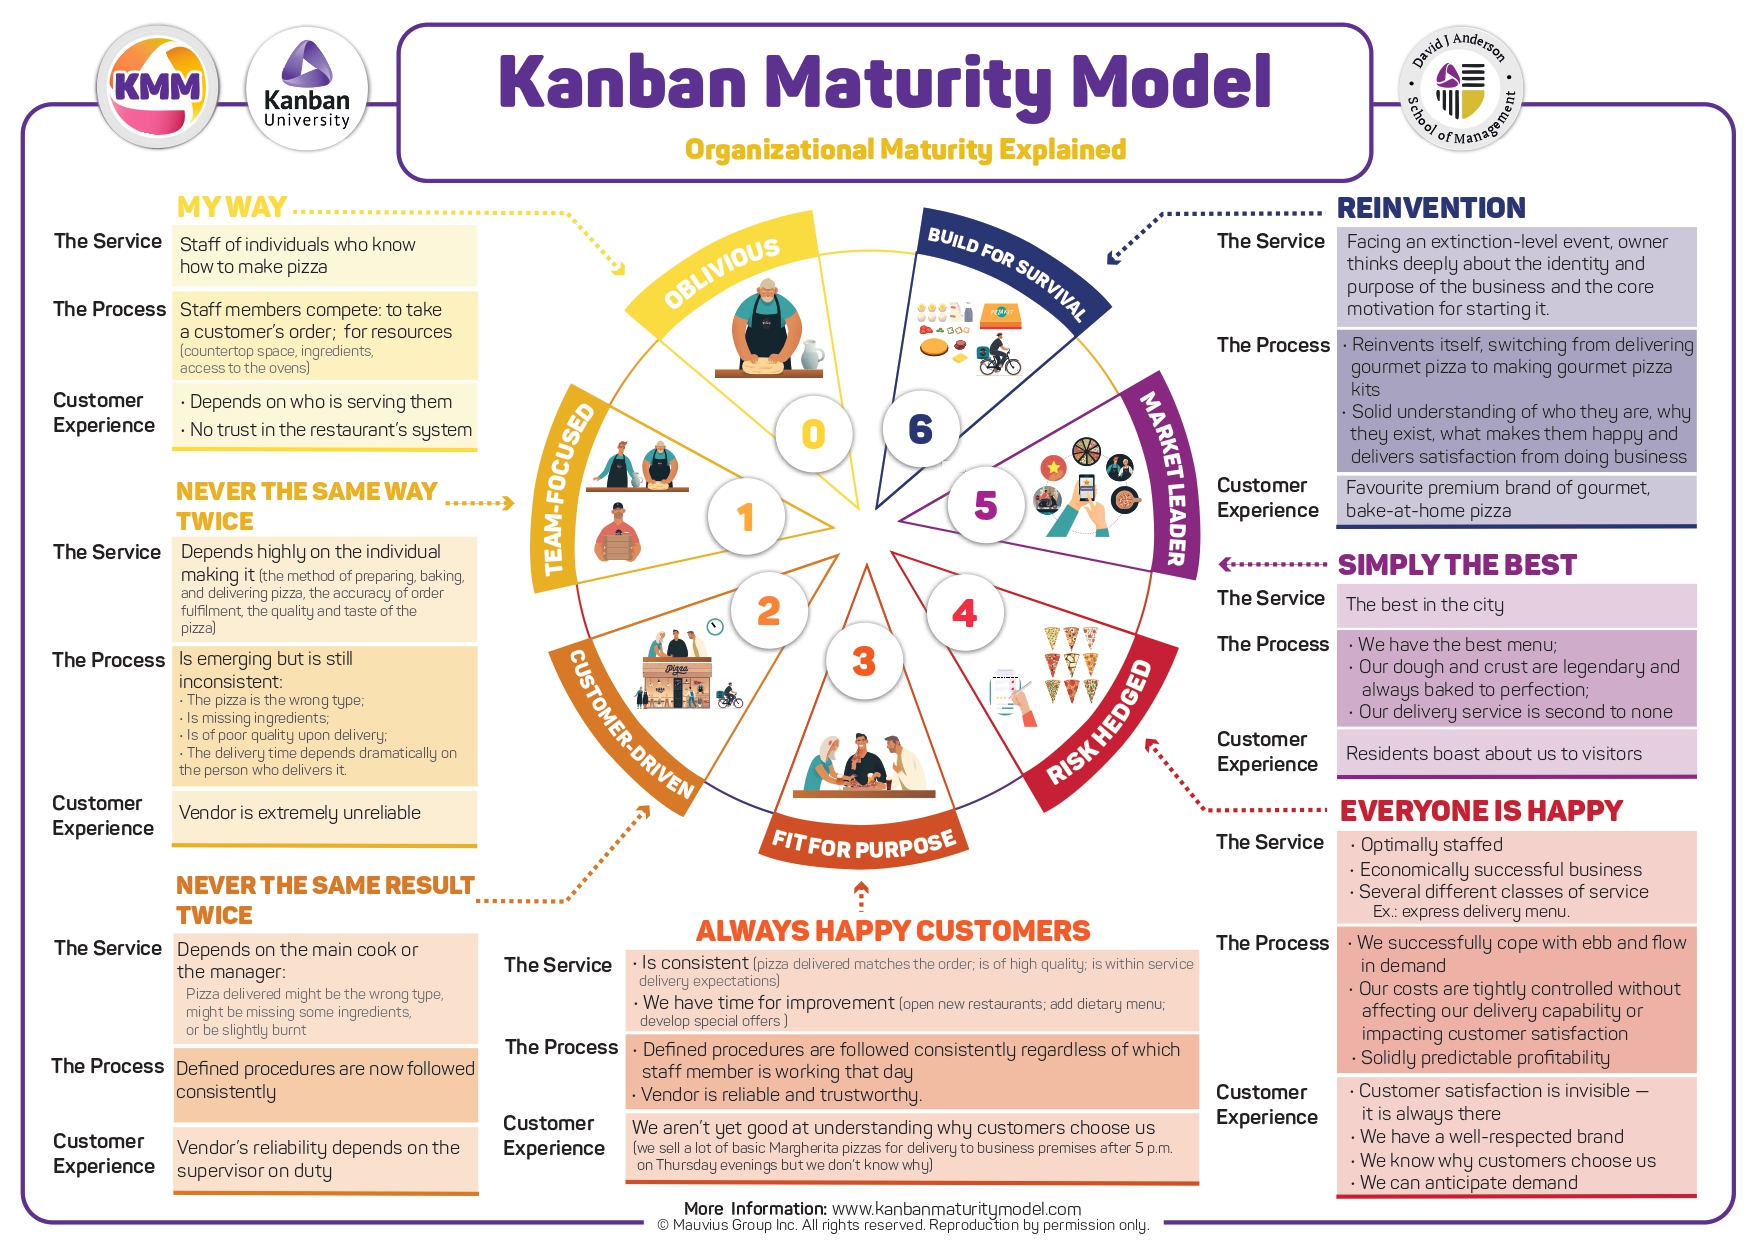 KMM - Kanban Maturity Model explicado no Formato de Pizza